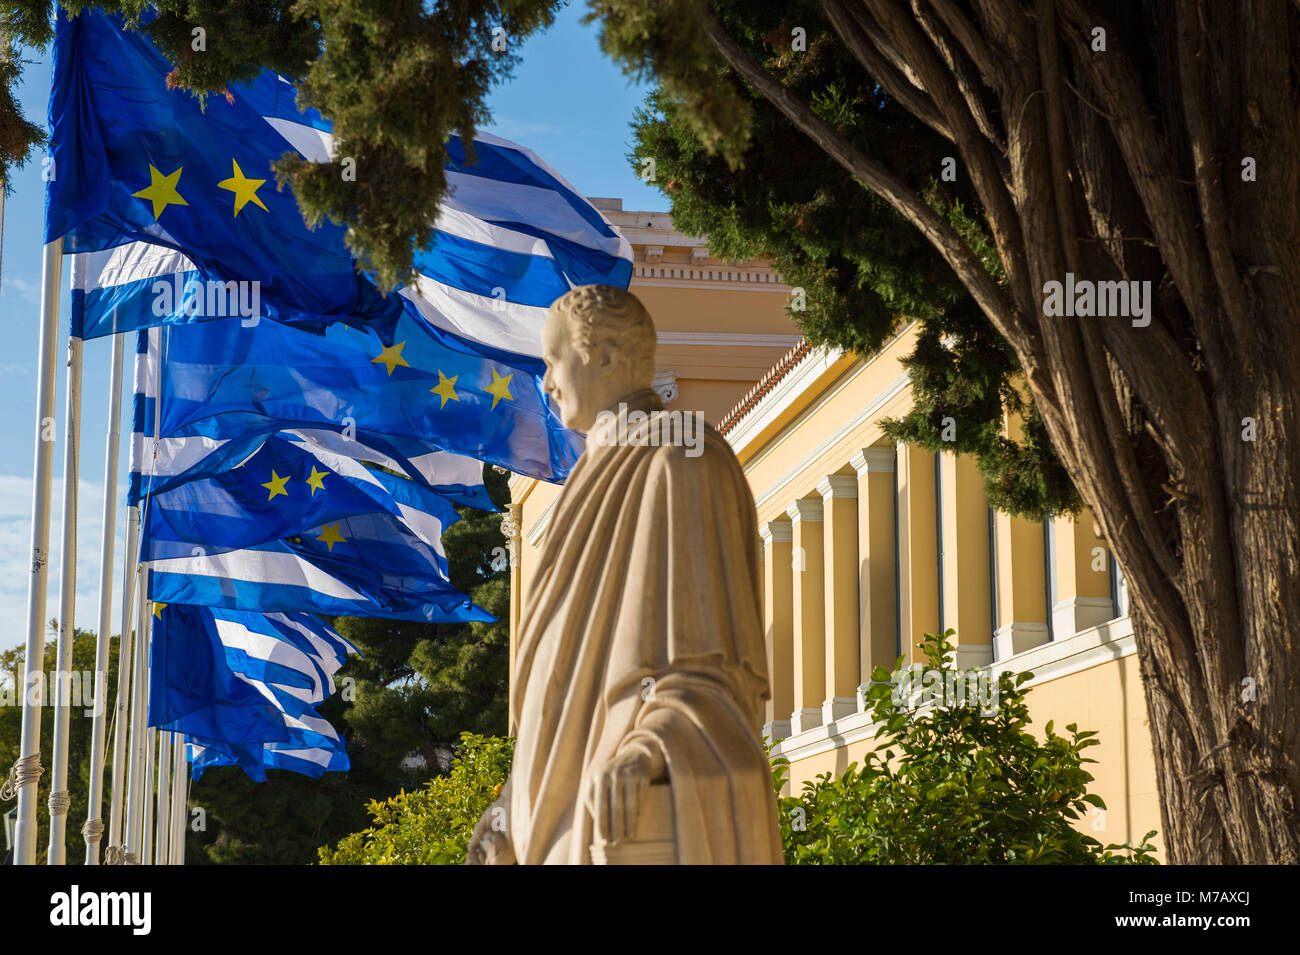 Athen, die griechische und europäische Flaggen, Zappeion Ausstellung und Kongress Halle. Griechenland. Stockfoto